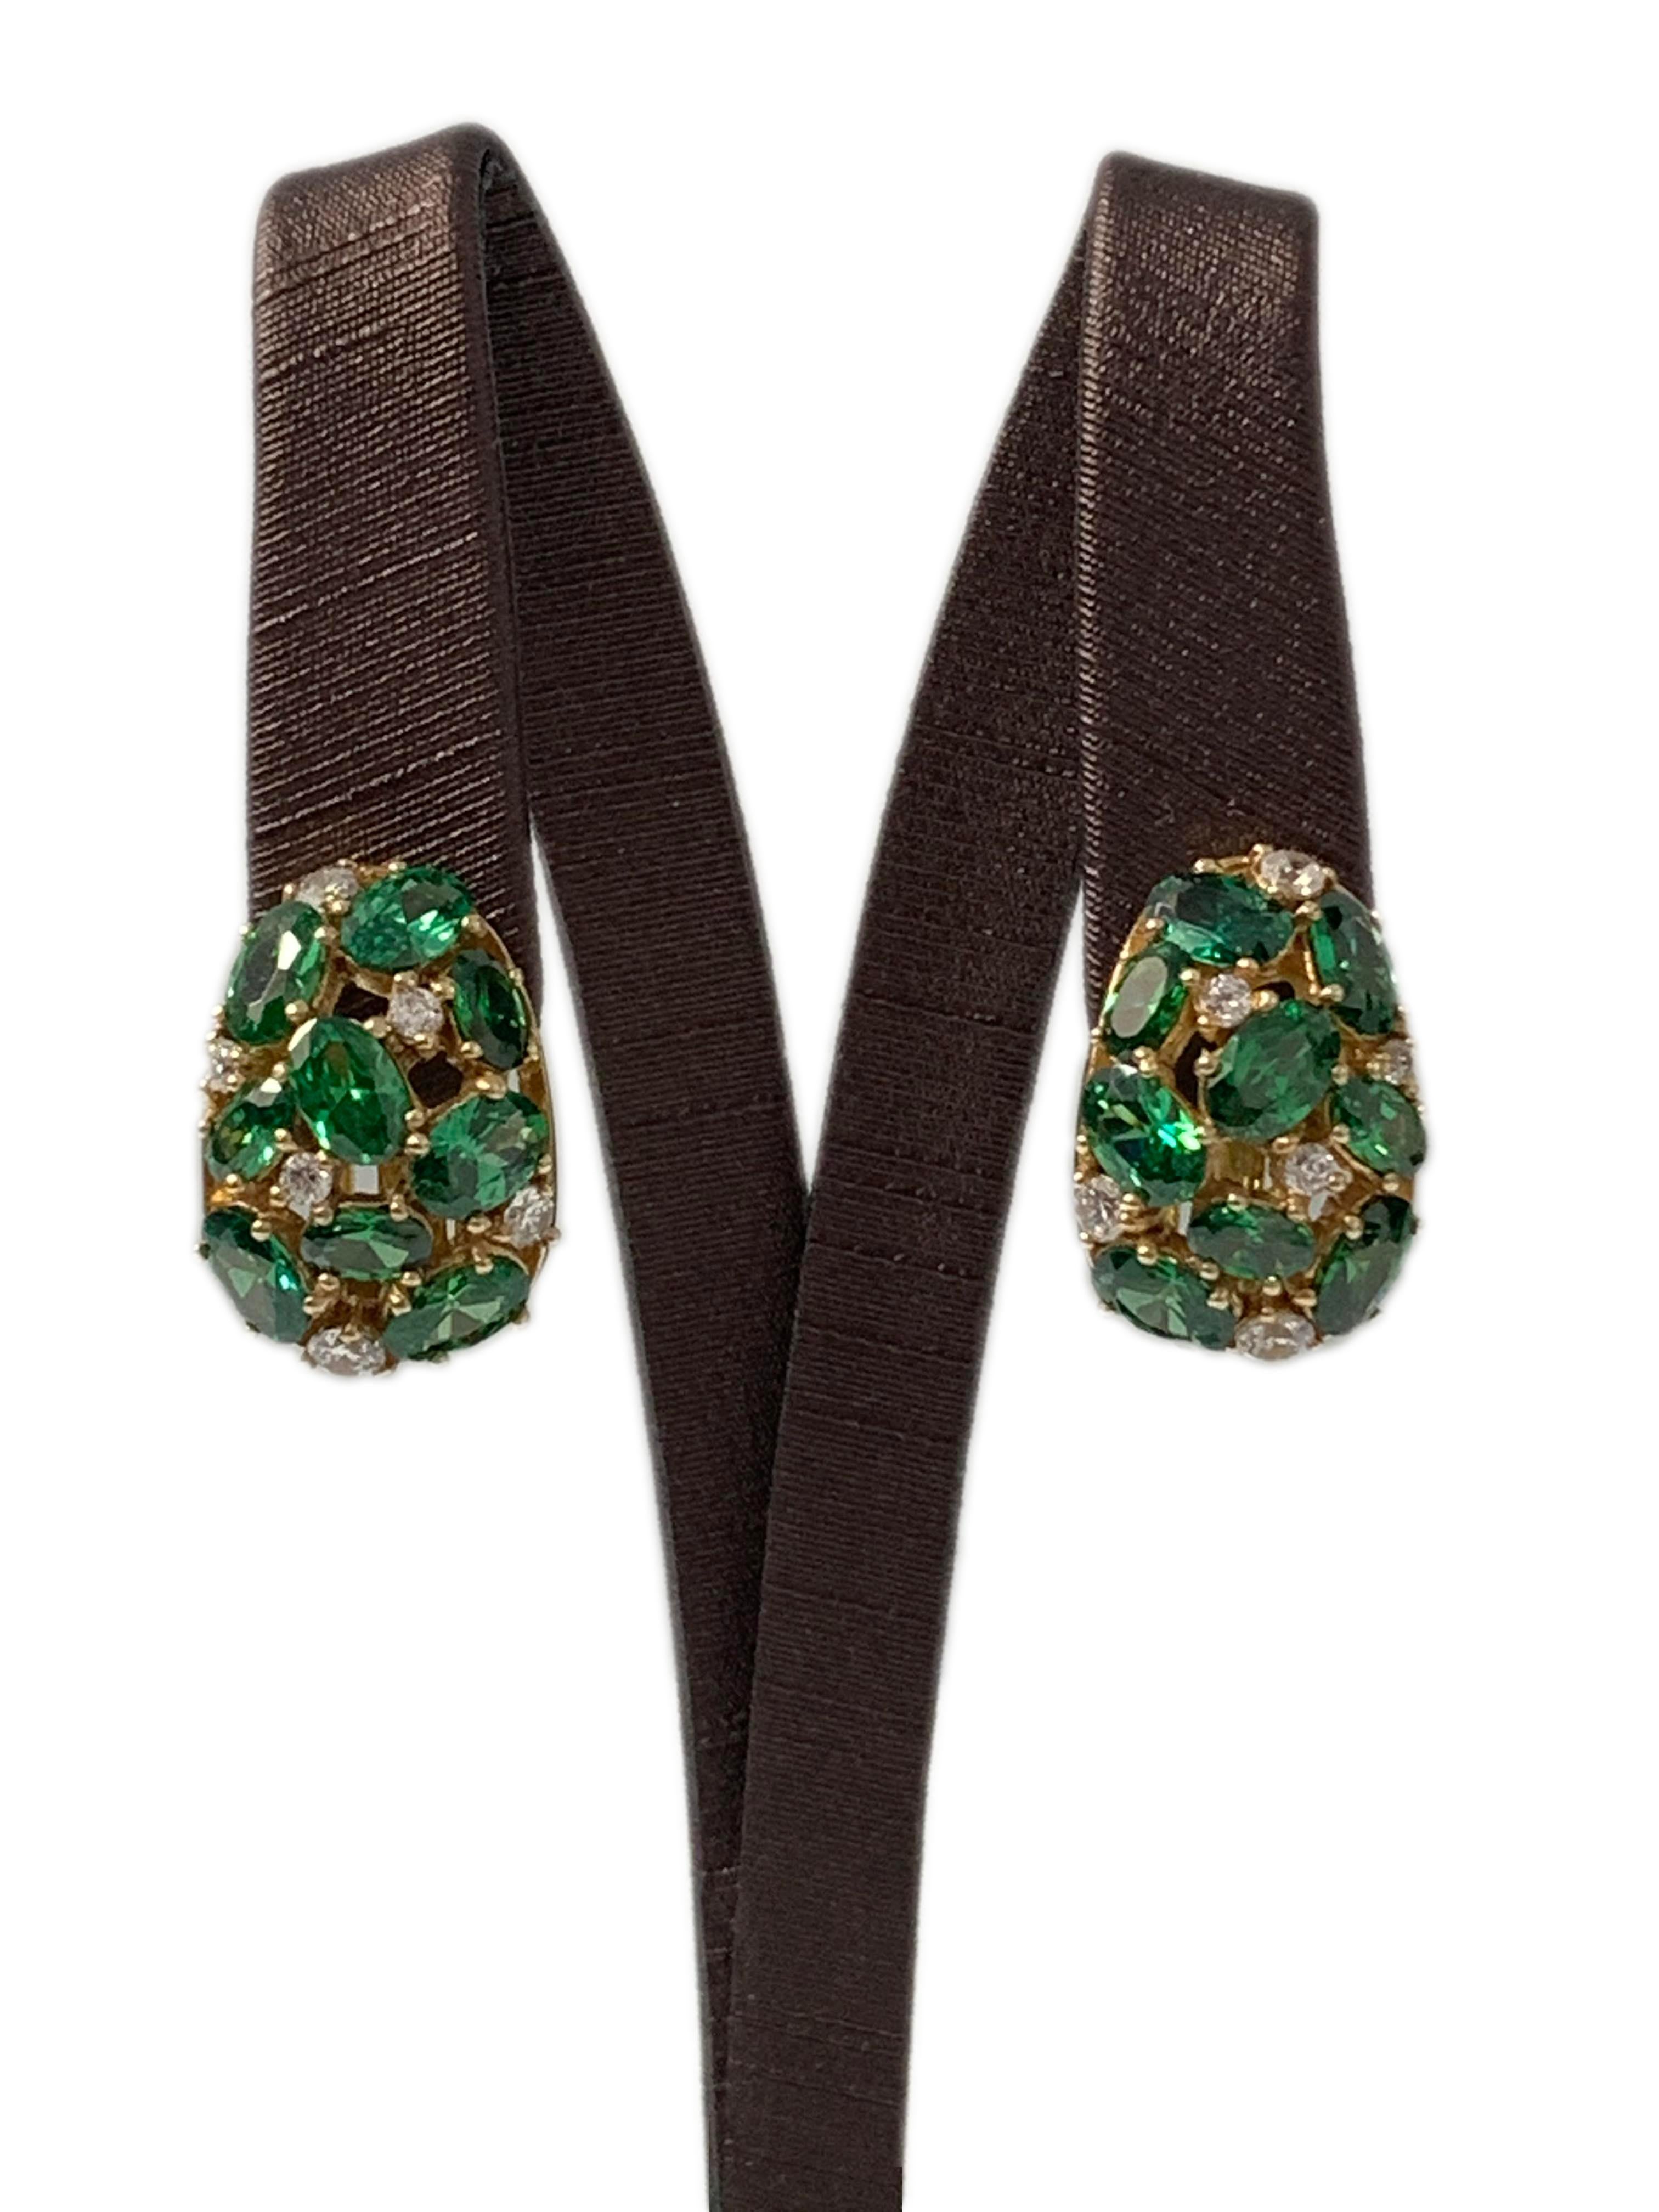 Wunderschöne eiförmige Ohrringe in grünem Nano-Smaragdkristall und simulierten Diamanten mit Clipverschluss

Diese Ohrringe bestehen aus 30 ovalen, hellen nano-grünen Smaragdkristallen und runden simulierten Diamanten, die in vergoldetem